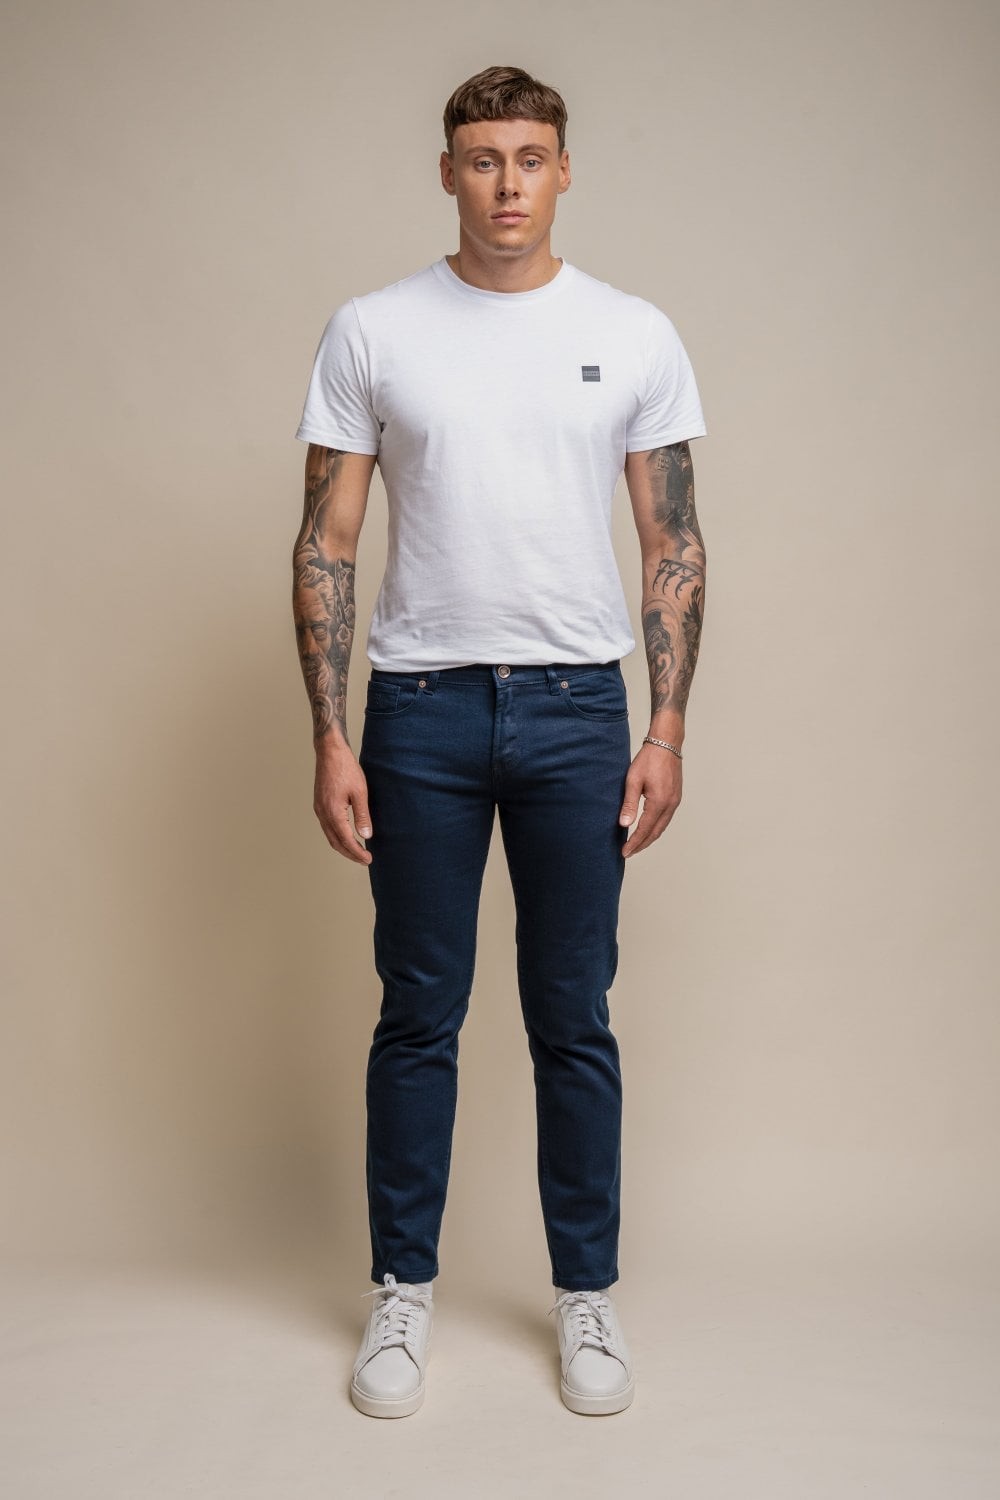 Herren Baumwolle Slim-Fit Stretch Denim Jeans - MILANO - Navy blau